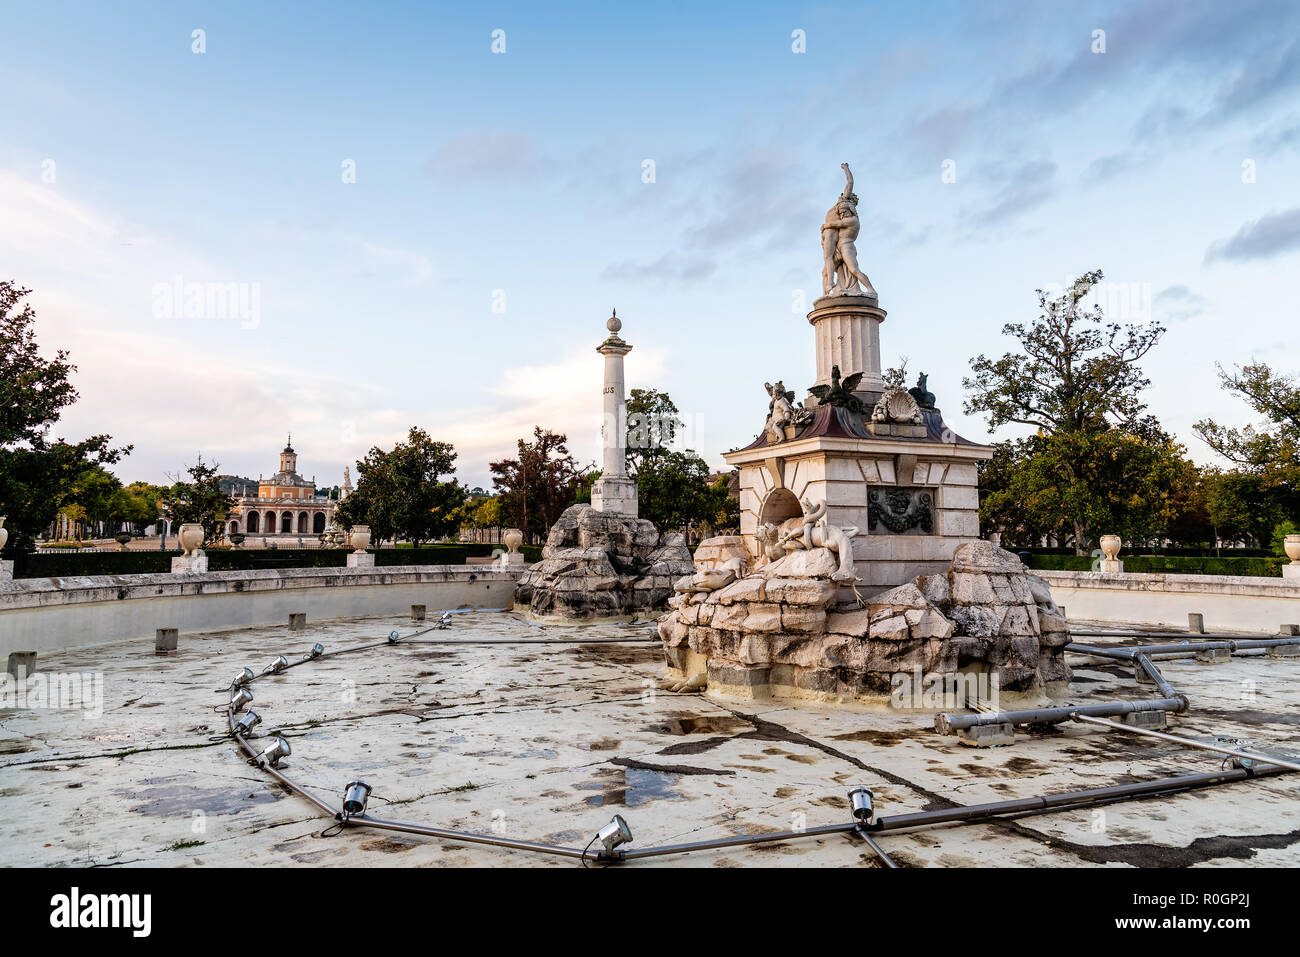 Aranjuez, Espagne - 20 octobre 2018 : La Fontaine d'Hercule et de Victory au Palais Royal d'Aranjuez au lever du soleil. Il s'agit d'une résidence du roi d'Espagne ouvrir Banque D'Images